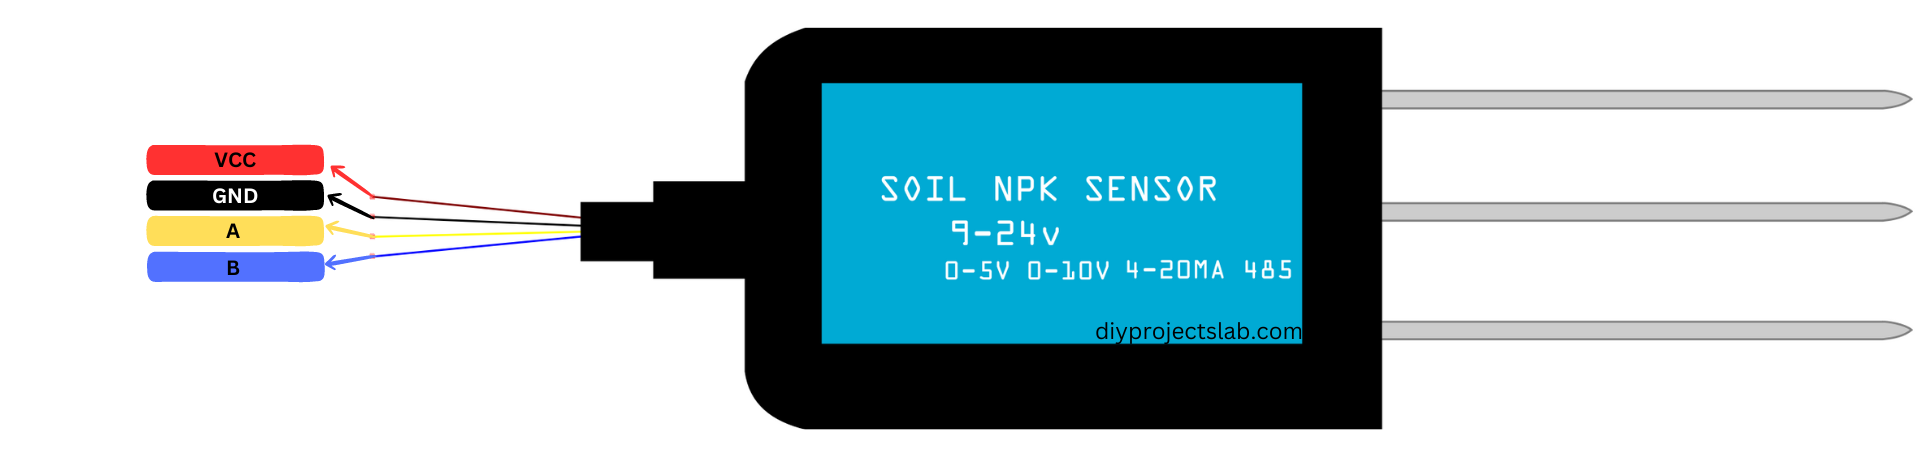 Soil NPK sensor Pinout